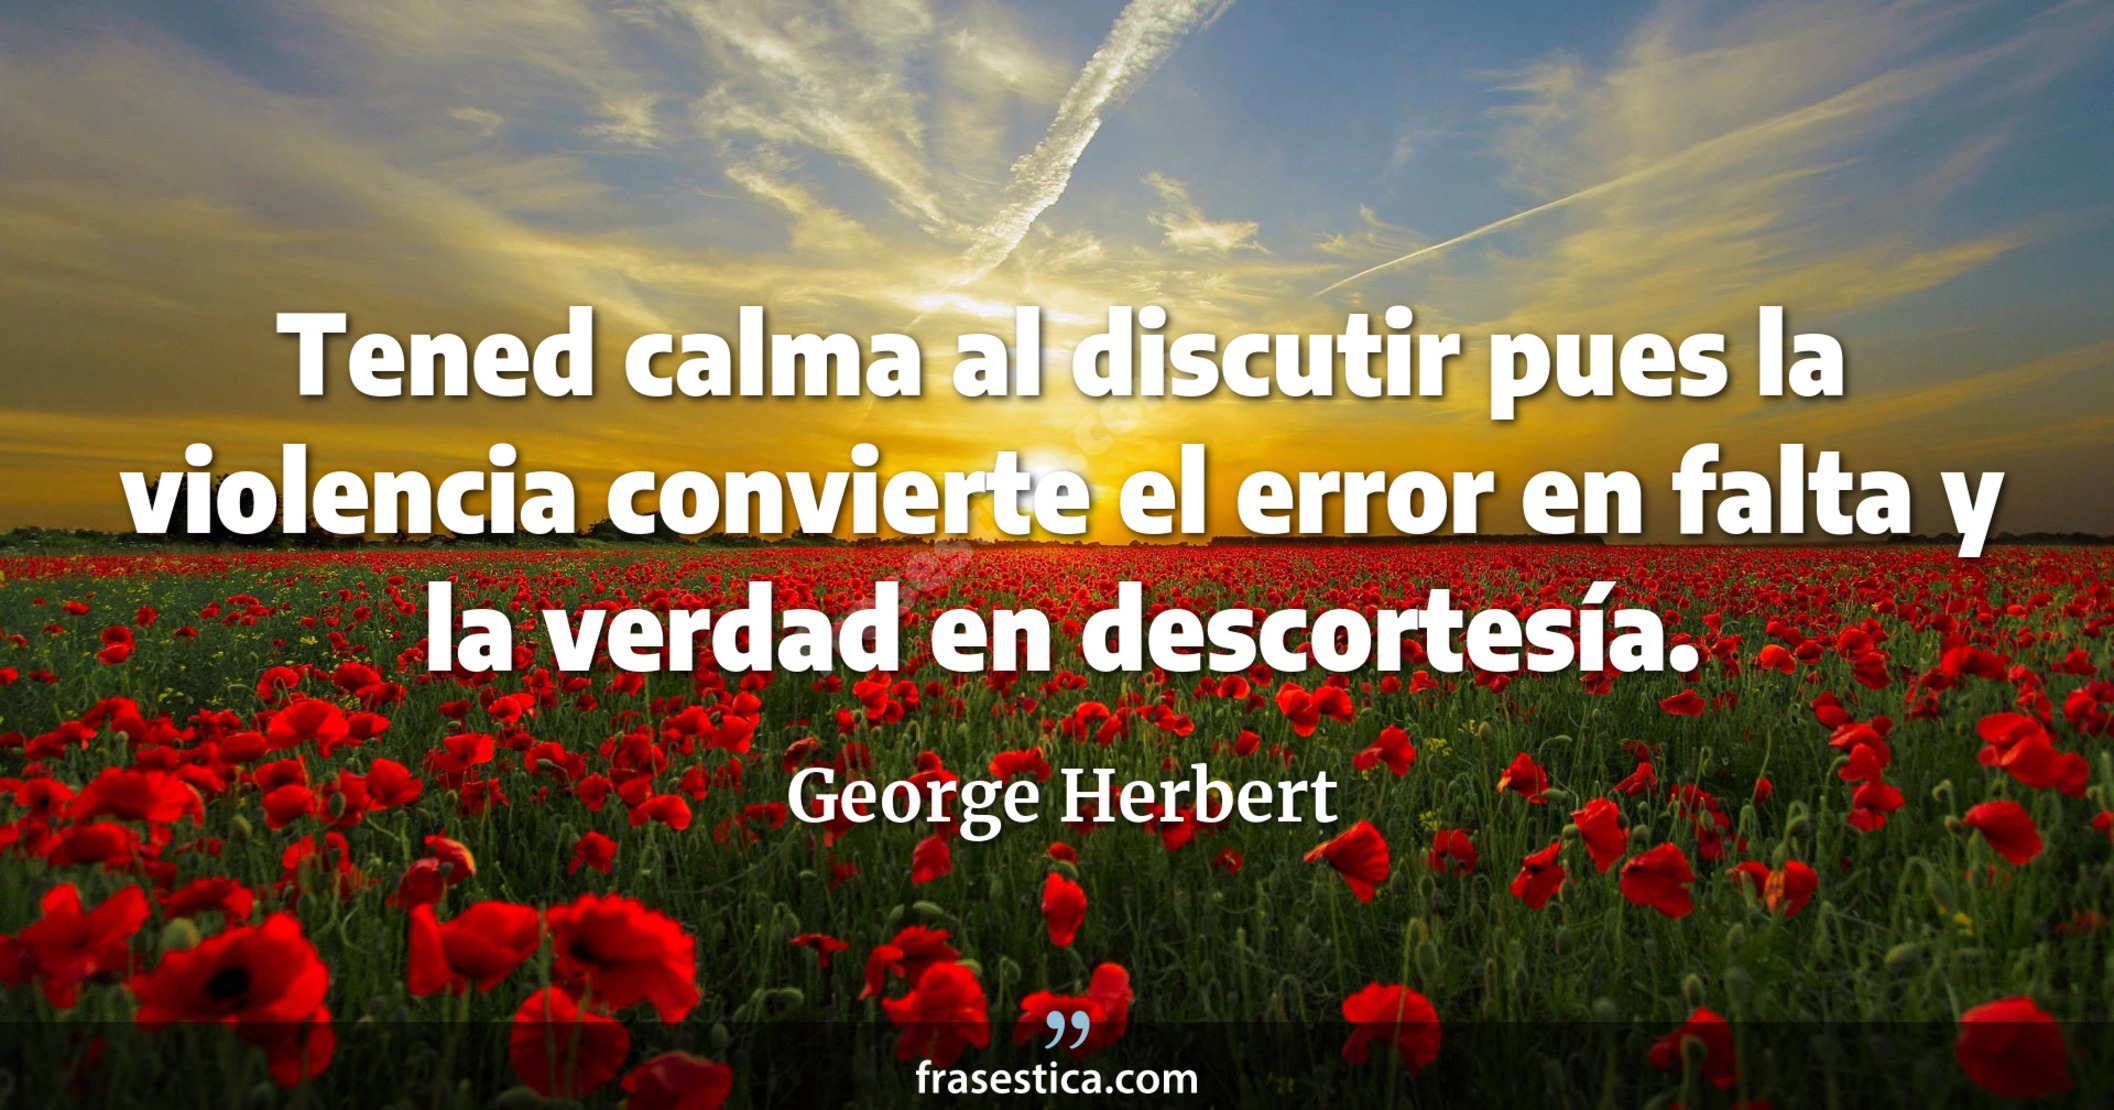 Tened calma al discutir pues la violencia convierte el error en falta y la verdad en descortesía. - George Herbert